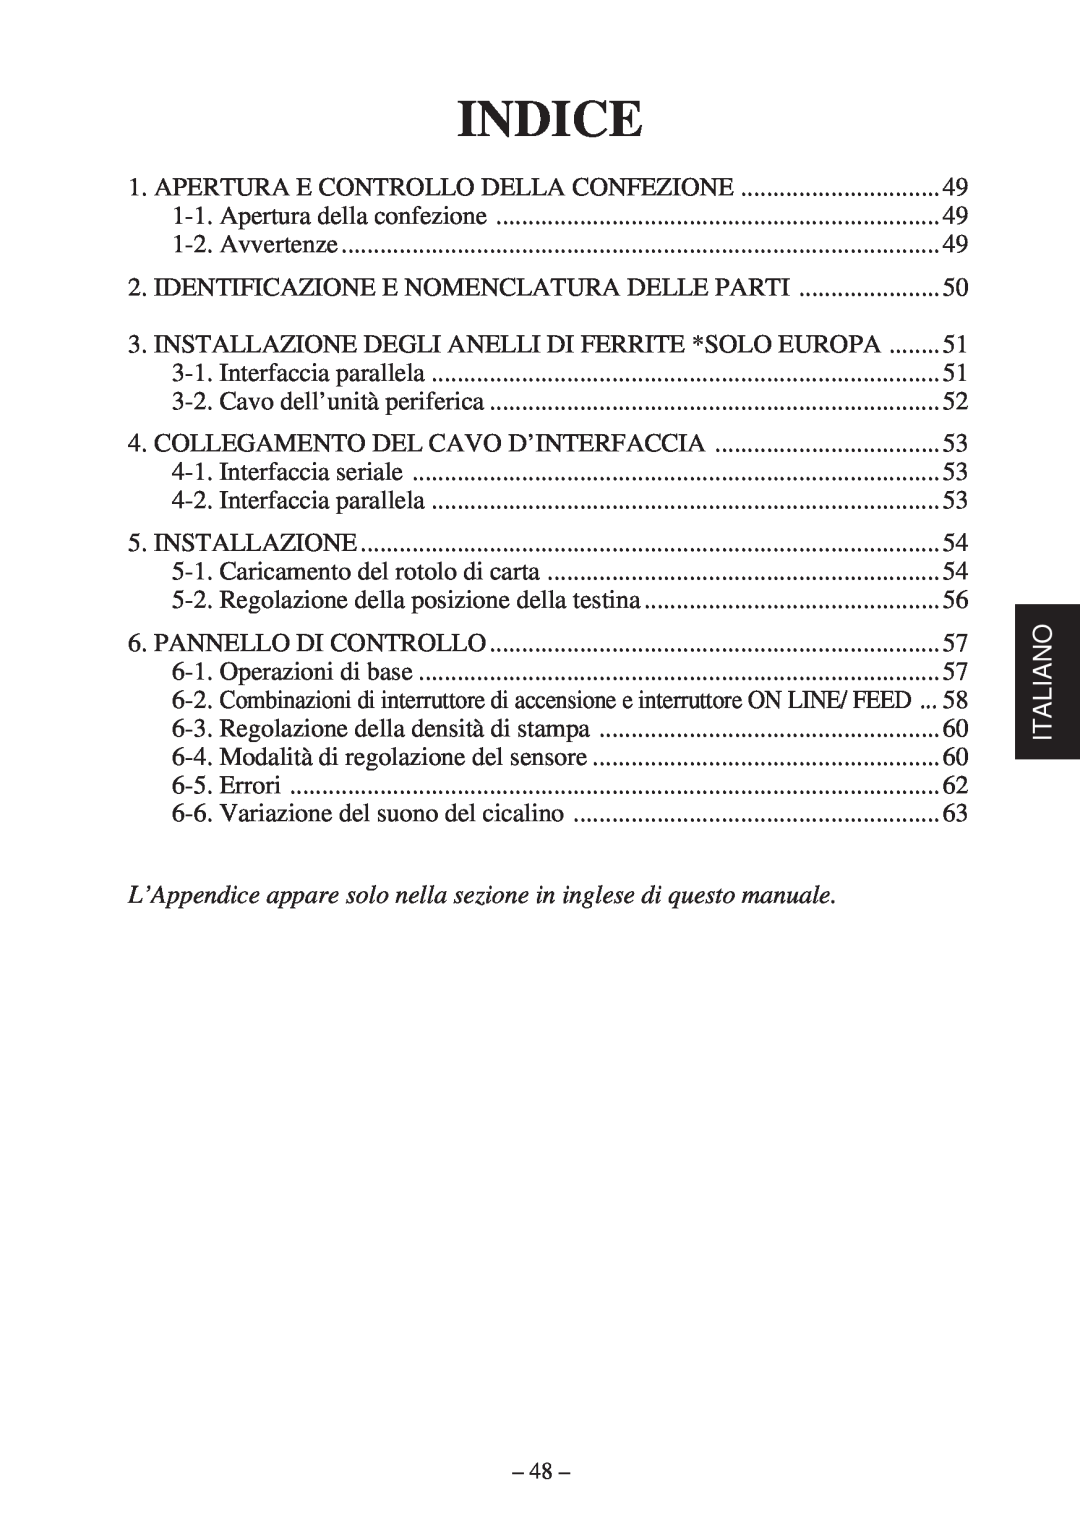 Star Micronics TSP400Z Series Indice, L’Appendice appare solo nella sezione in inglese di questo manuale, Italiano 